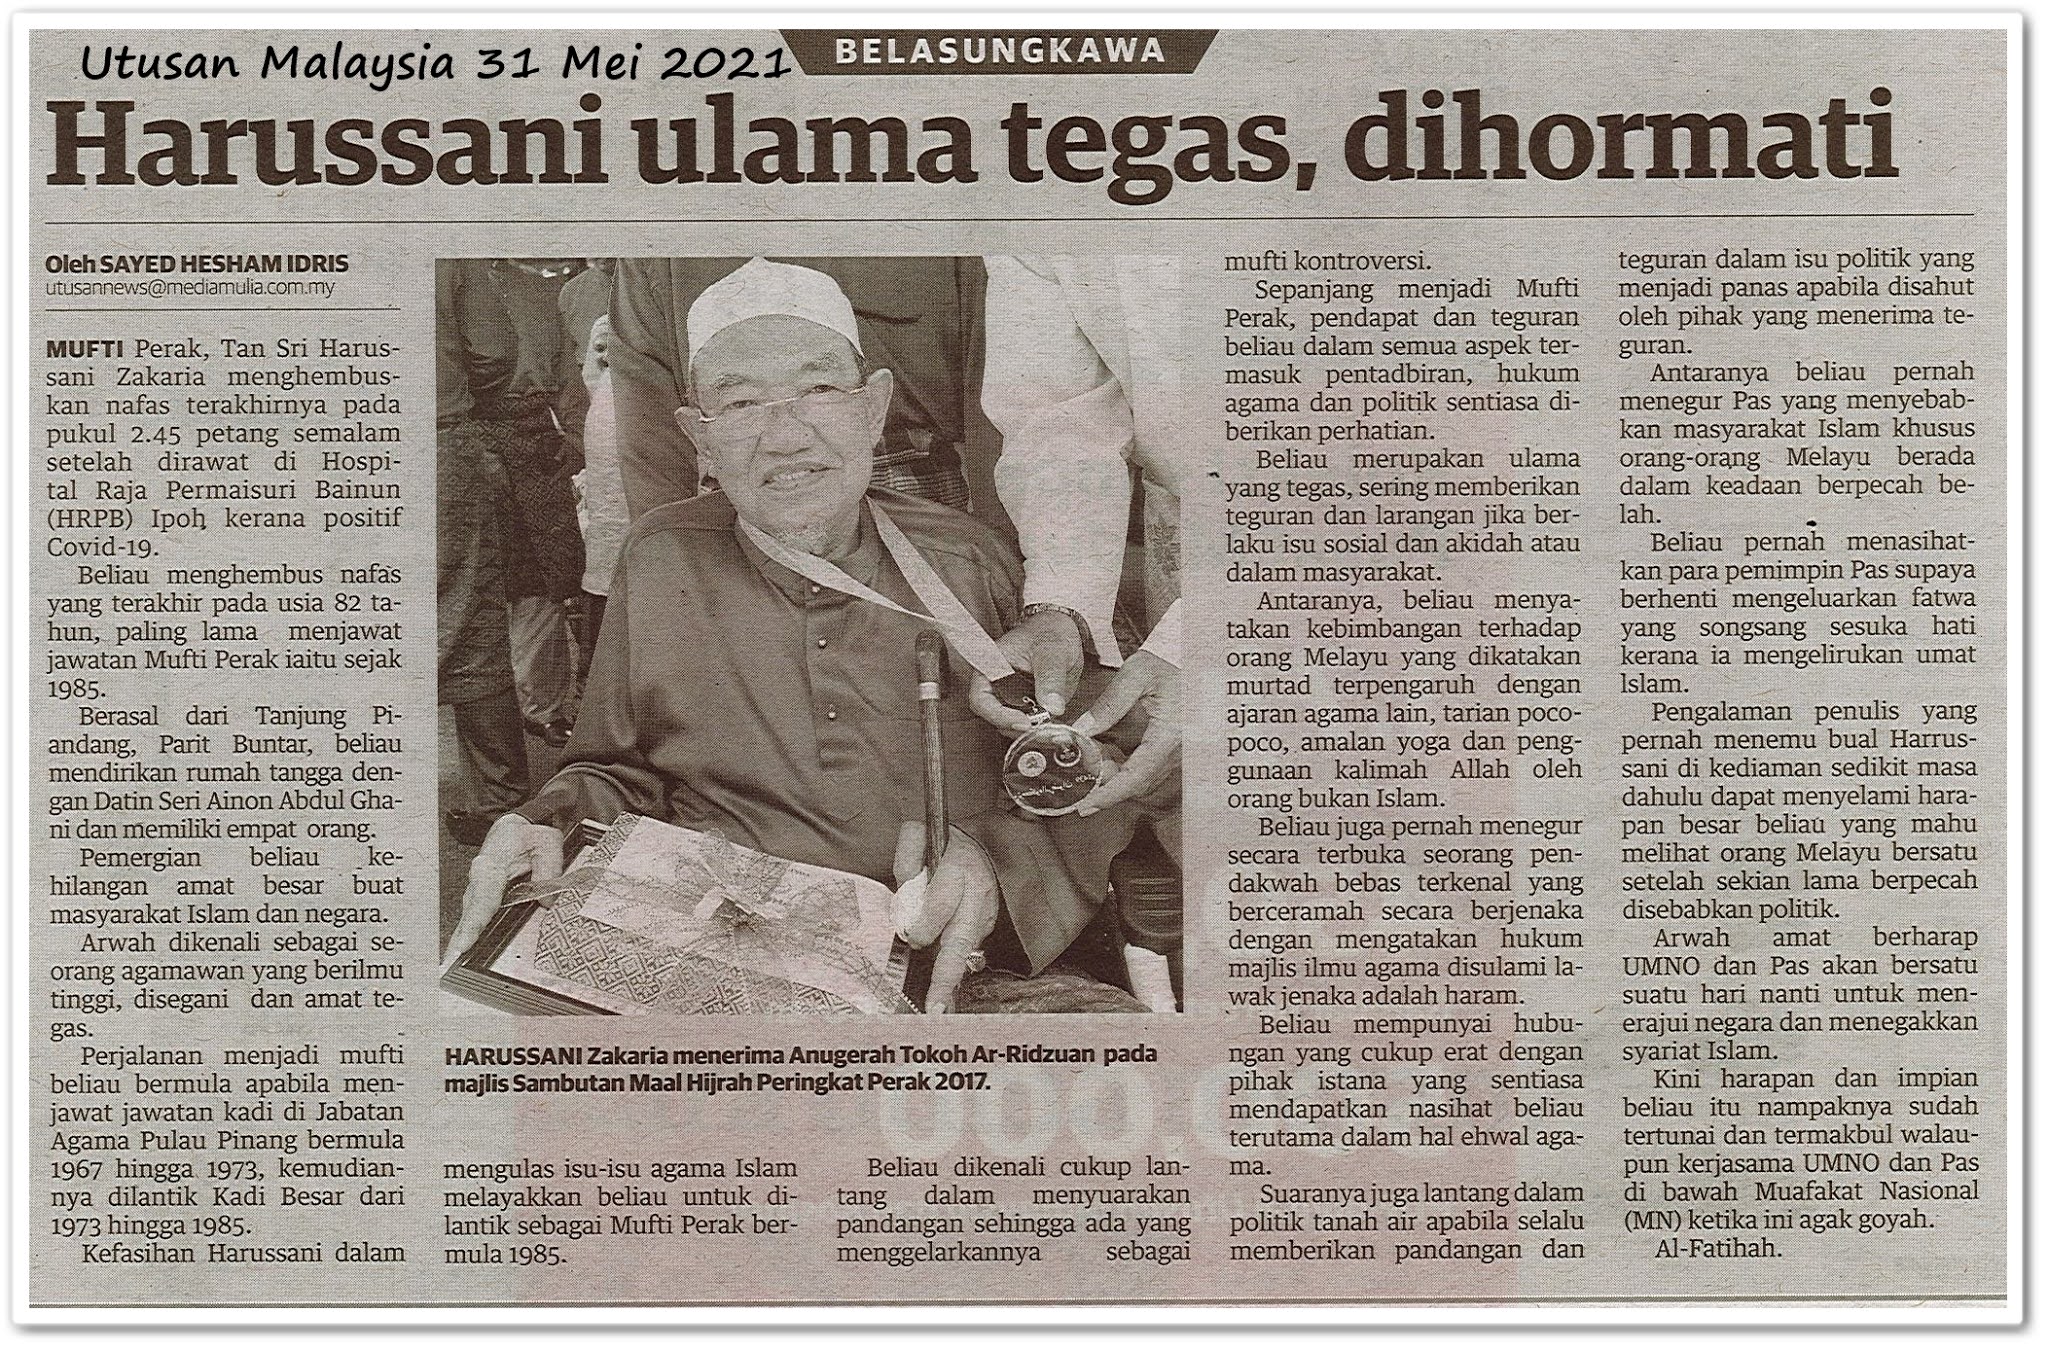 Belasungkawa : Harussani ulama tegas, dihormati - Keratan akhbar Utusan Malaysia 31 Mei 2021